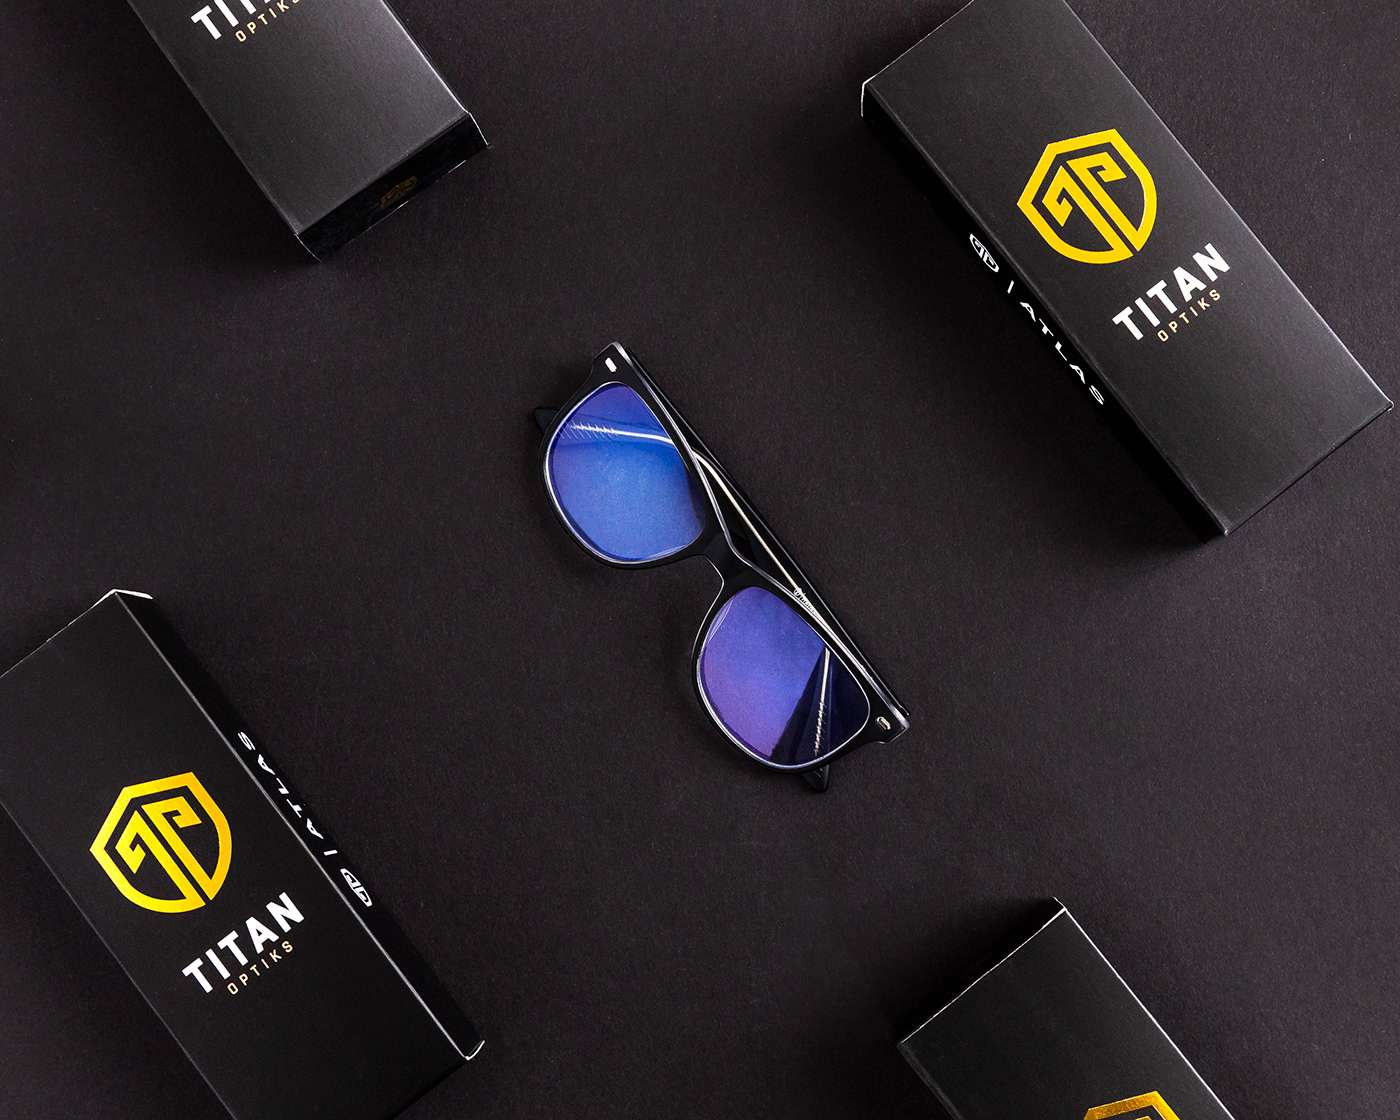 logo Logotype brand copywriting  titan optiks Gaming eyewear identity branding 